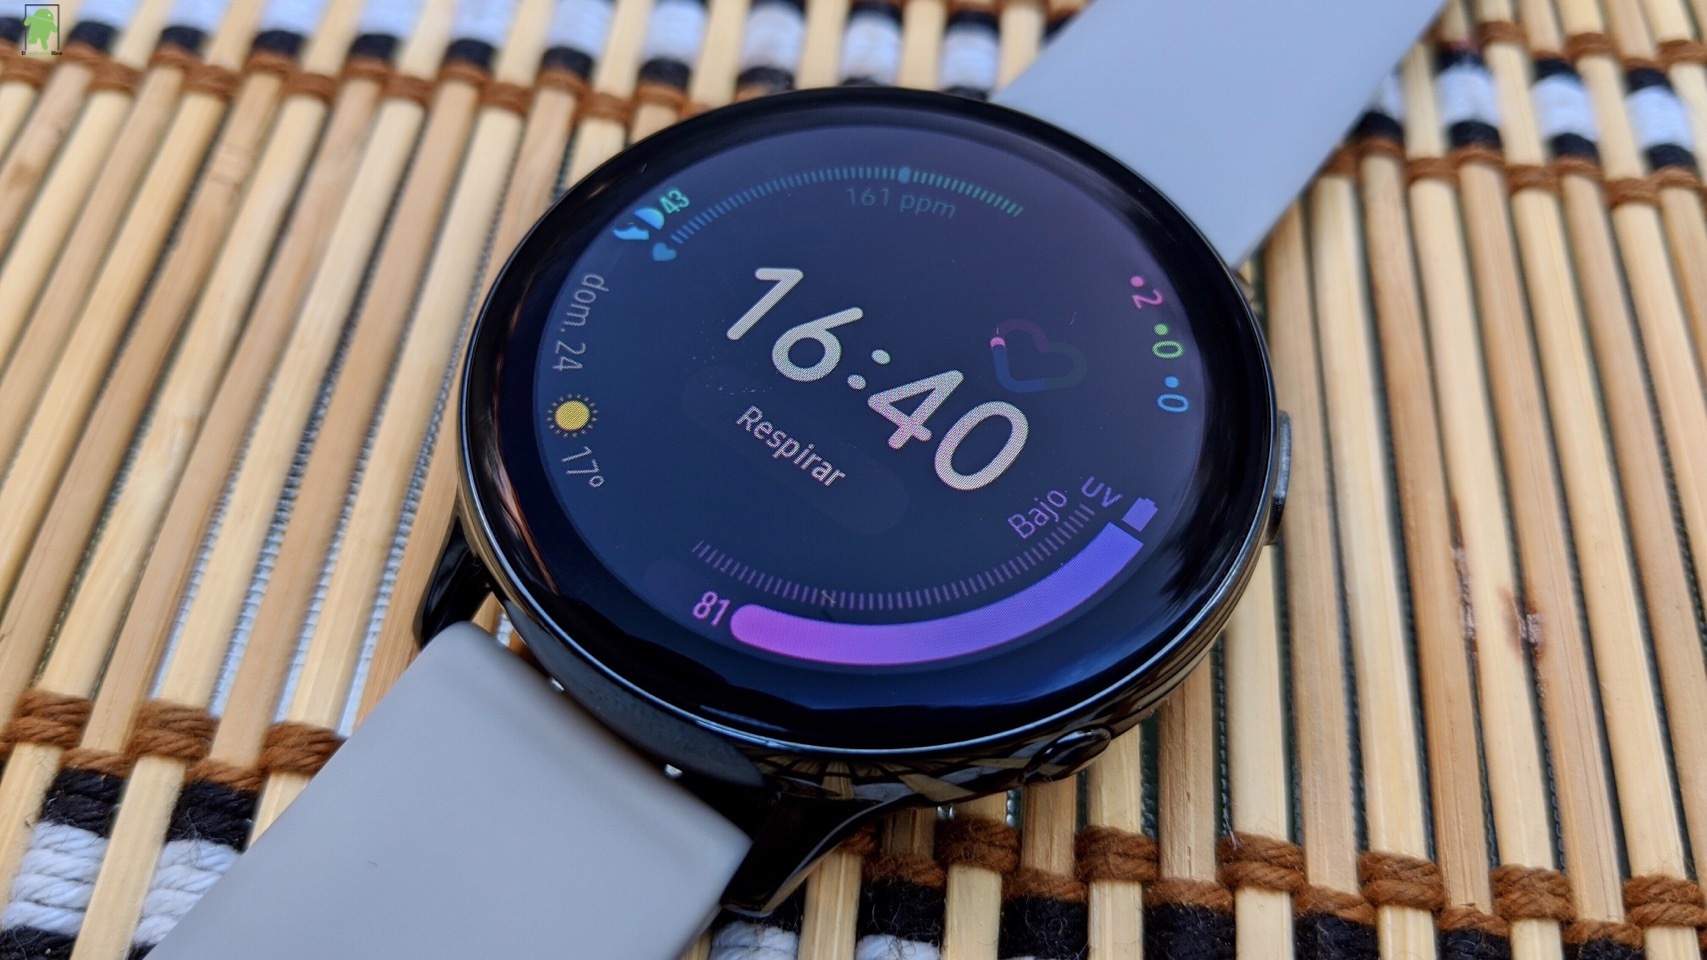 Samsung Galaxy Watch Active 2, análisis: review con características, precio  y especif